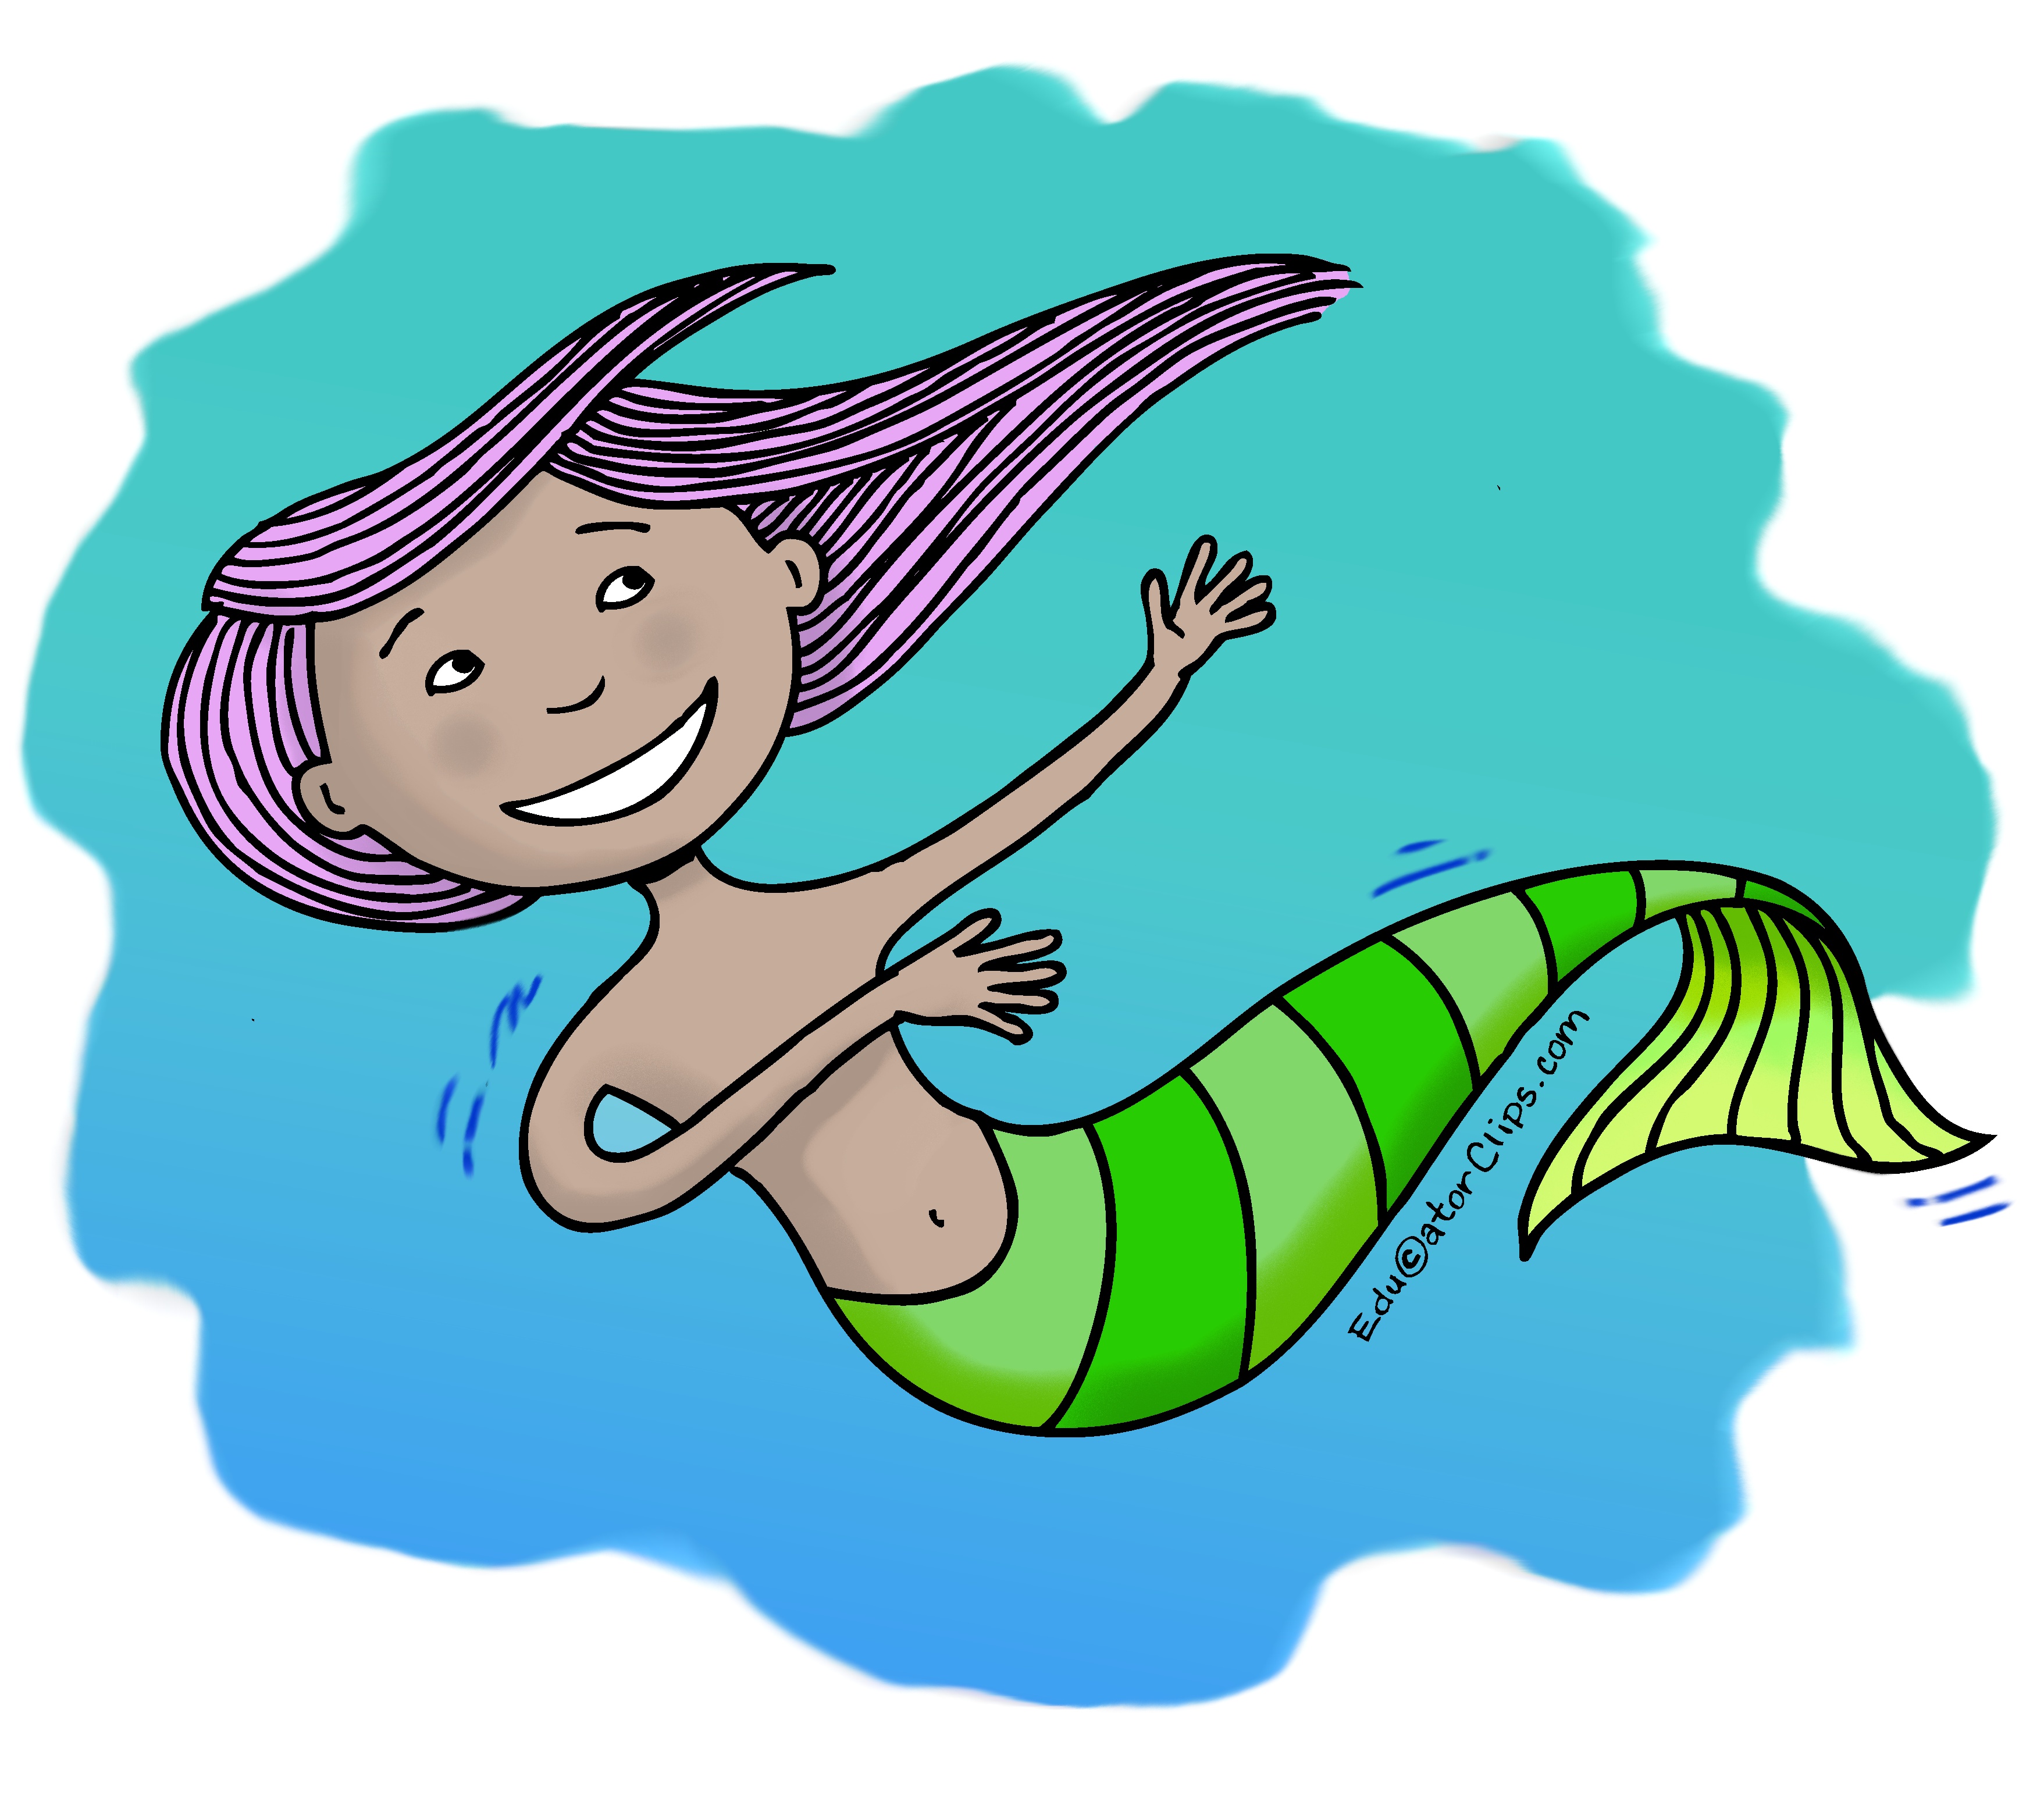 Little Mermaid Clip Art,mermaid,mergirl,sea girl, ocean girl,lil mermaid,mermaiden,werlady,ocean fairy,mermaid magic